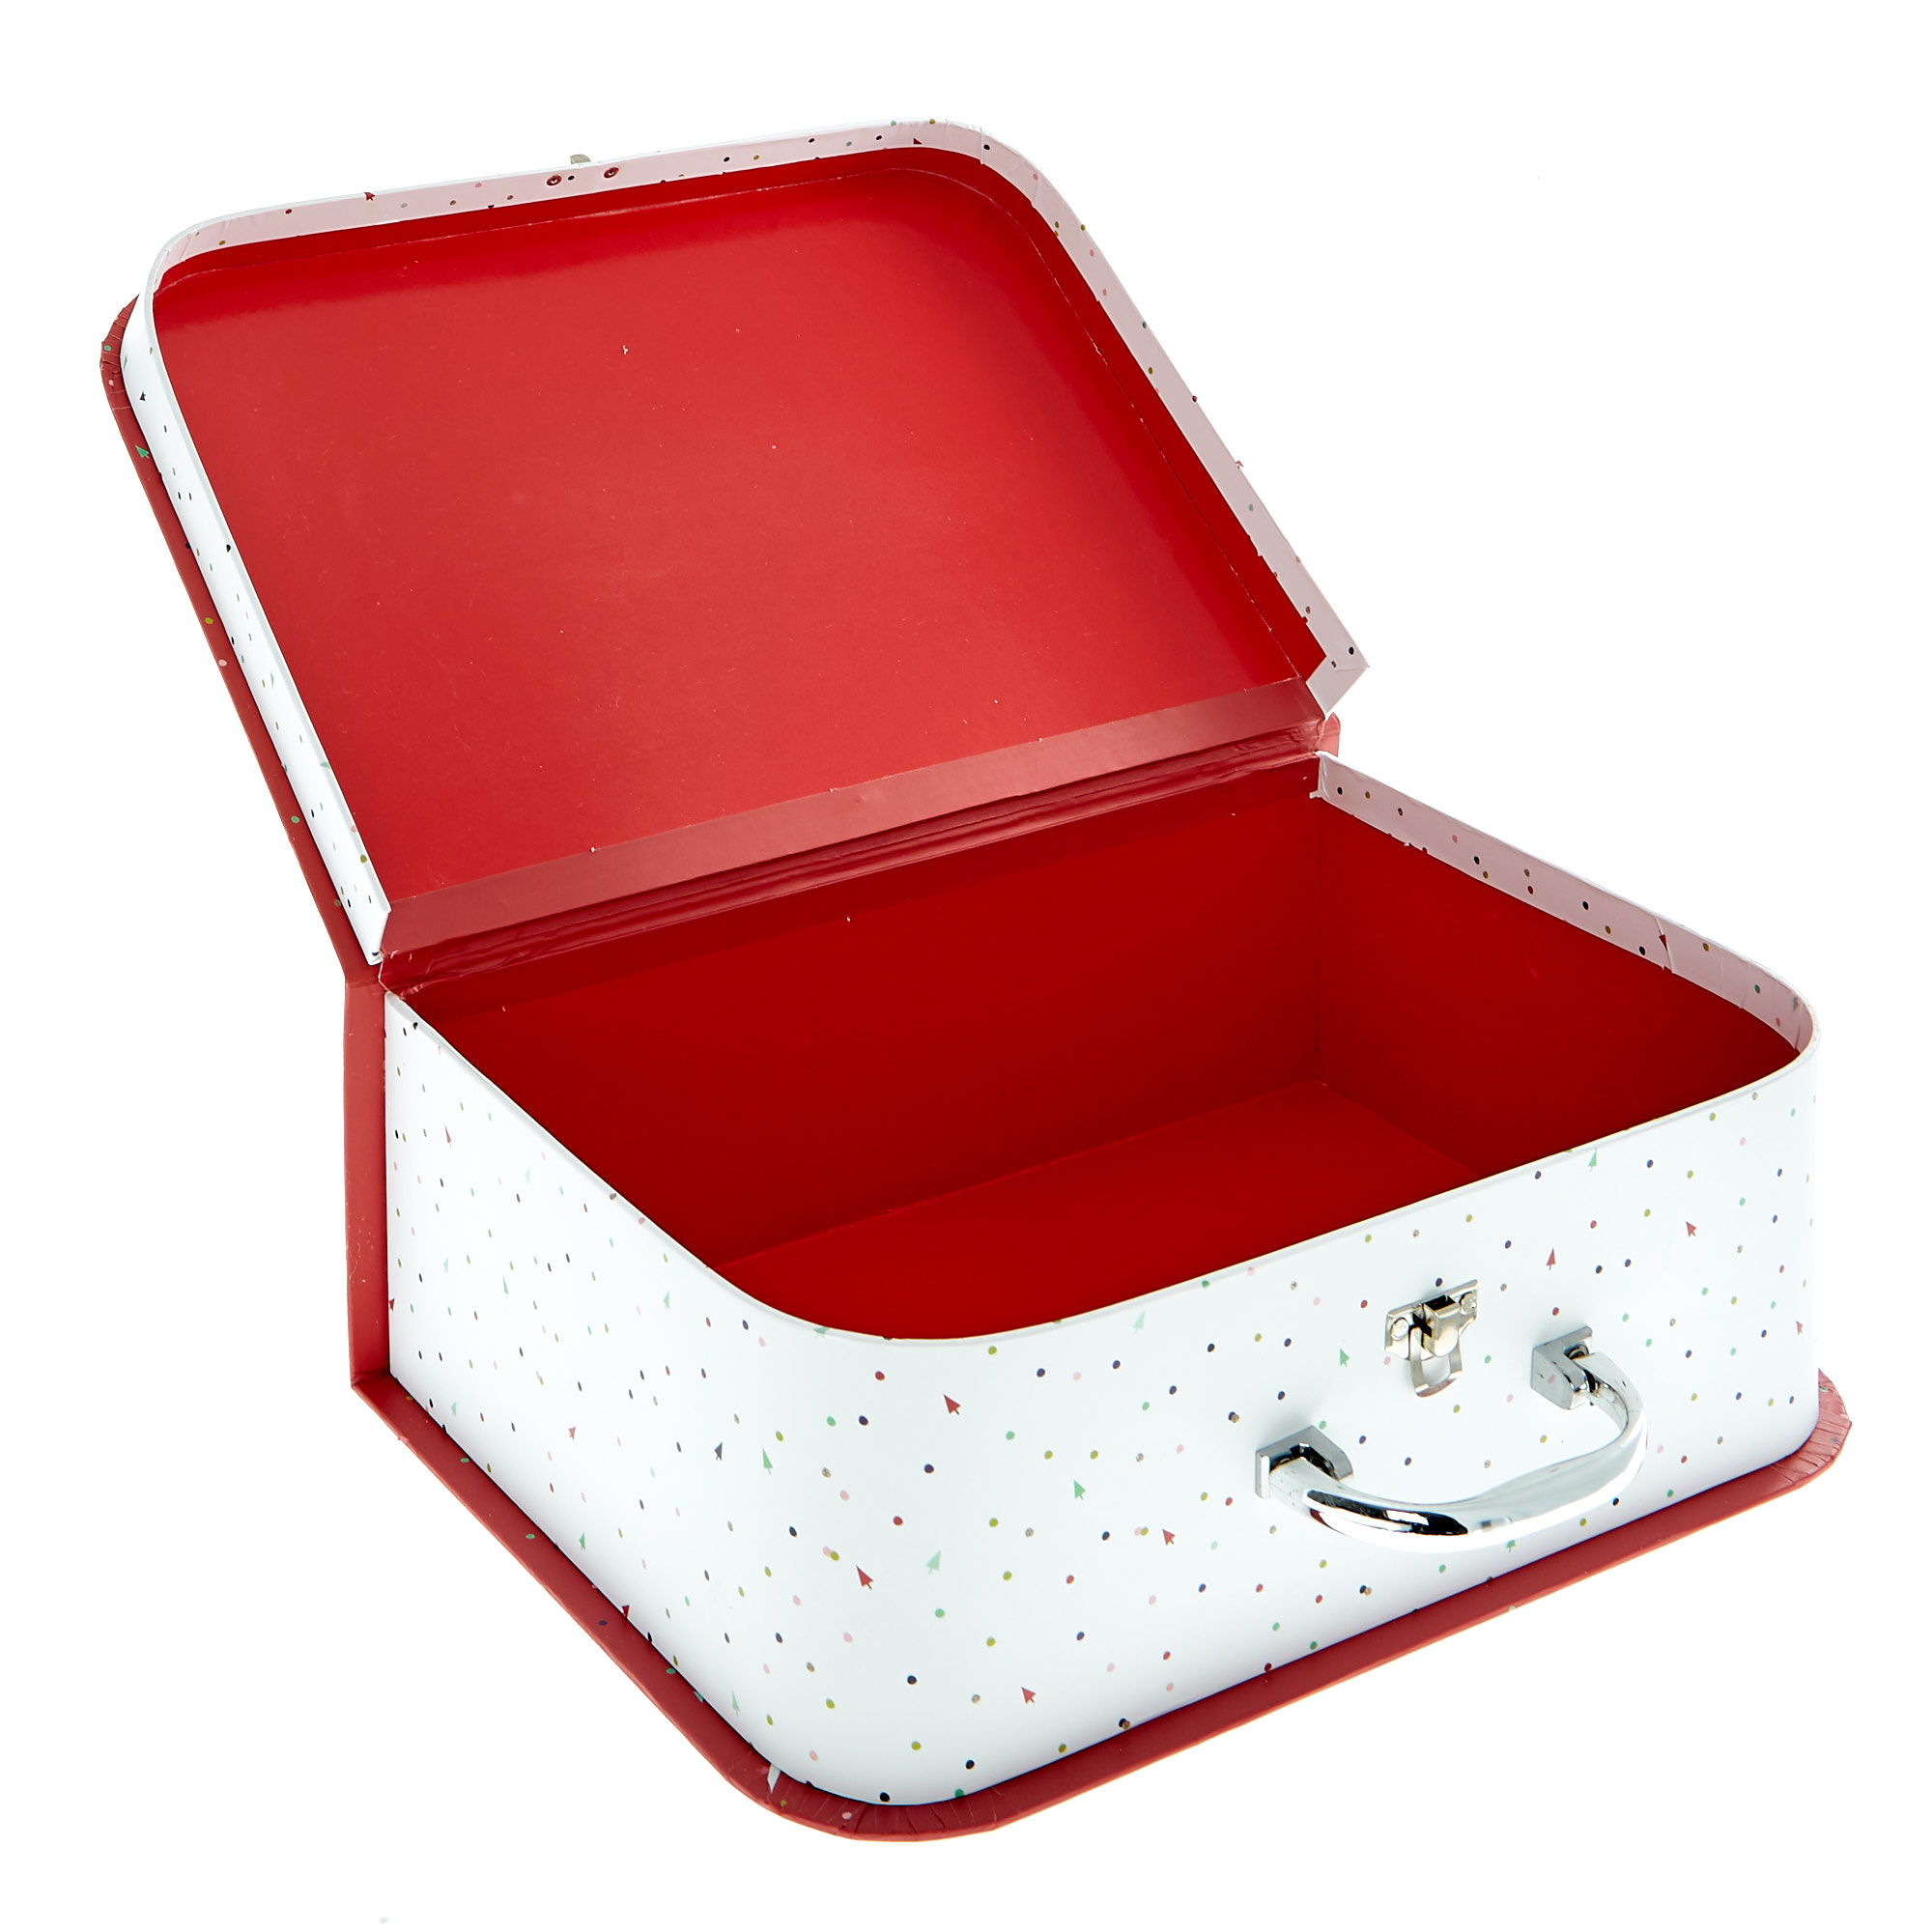 Santa & Penguin Luggage Gift Boxes - Set Of 2 